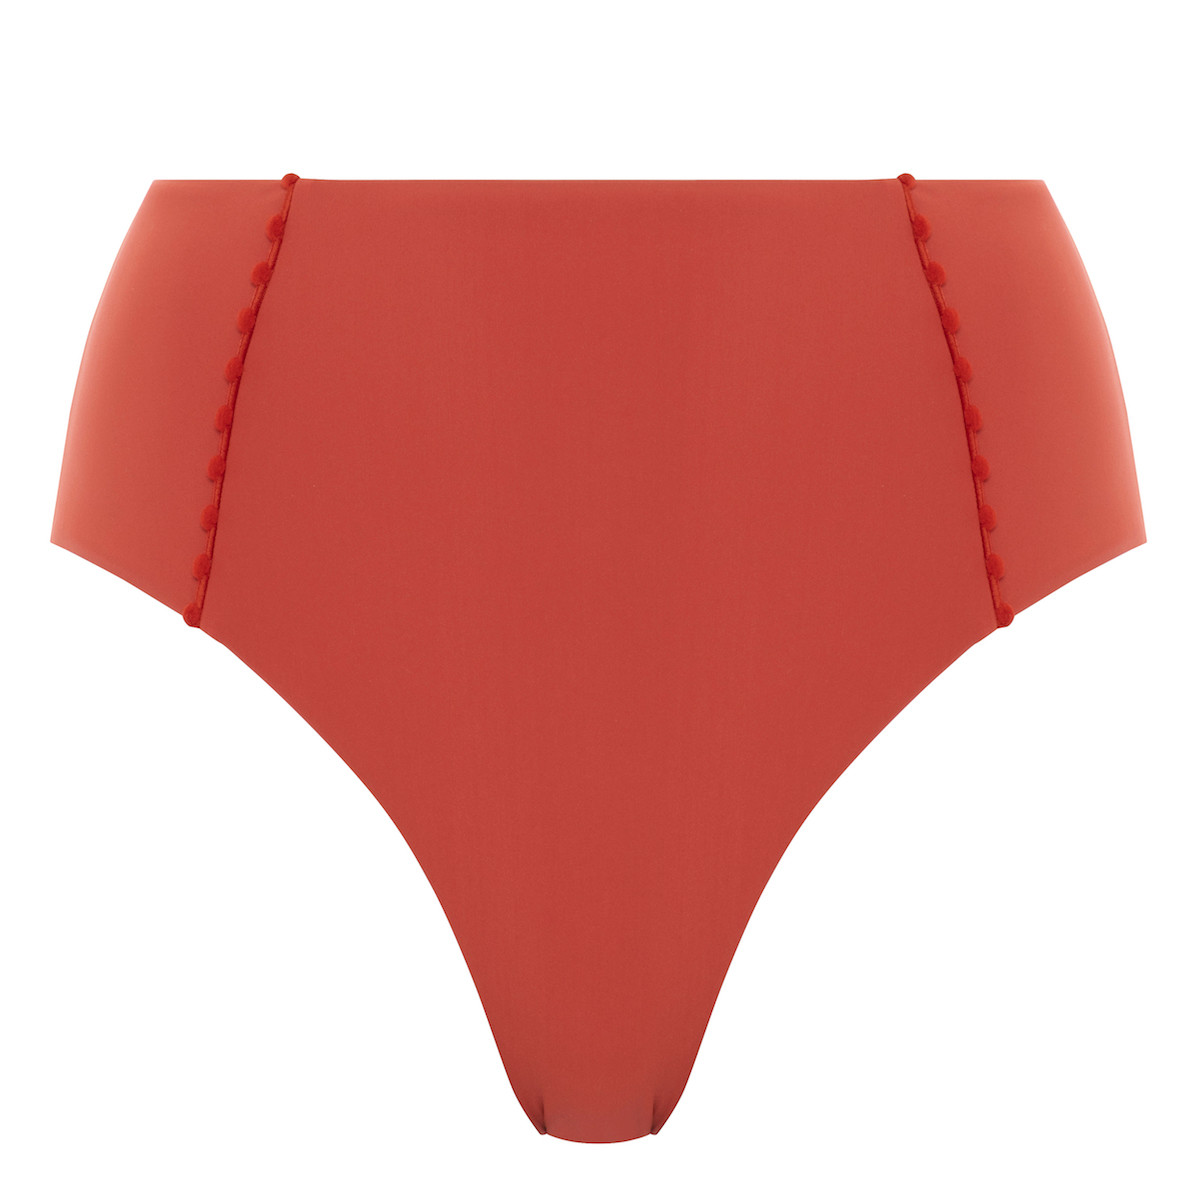 Passionata Enea Bikini Maxi trusse, Størrelse: 40, Farve: Rød, Dame